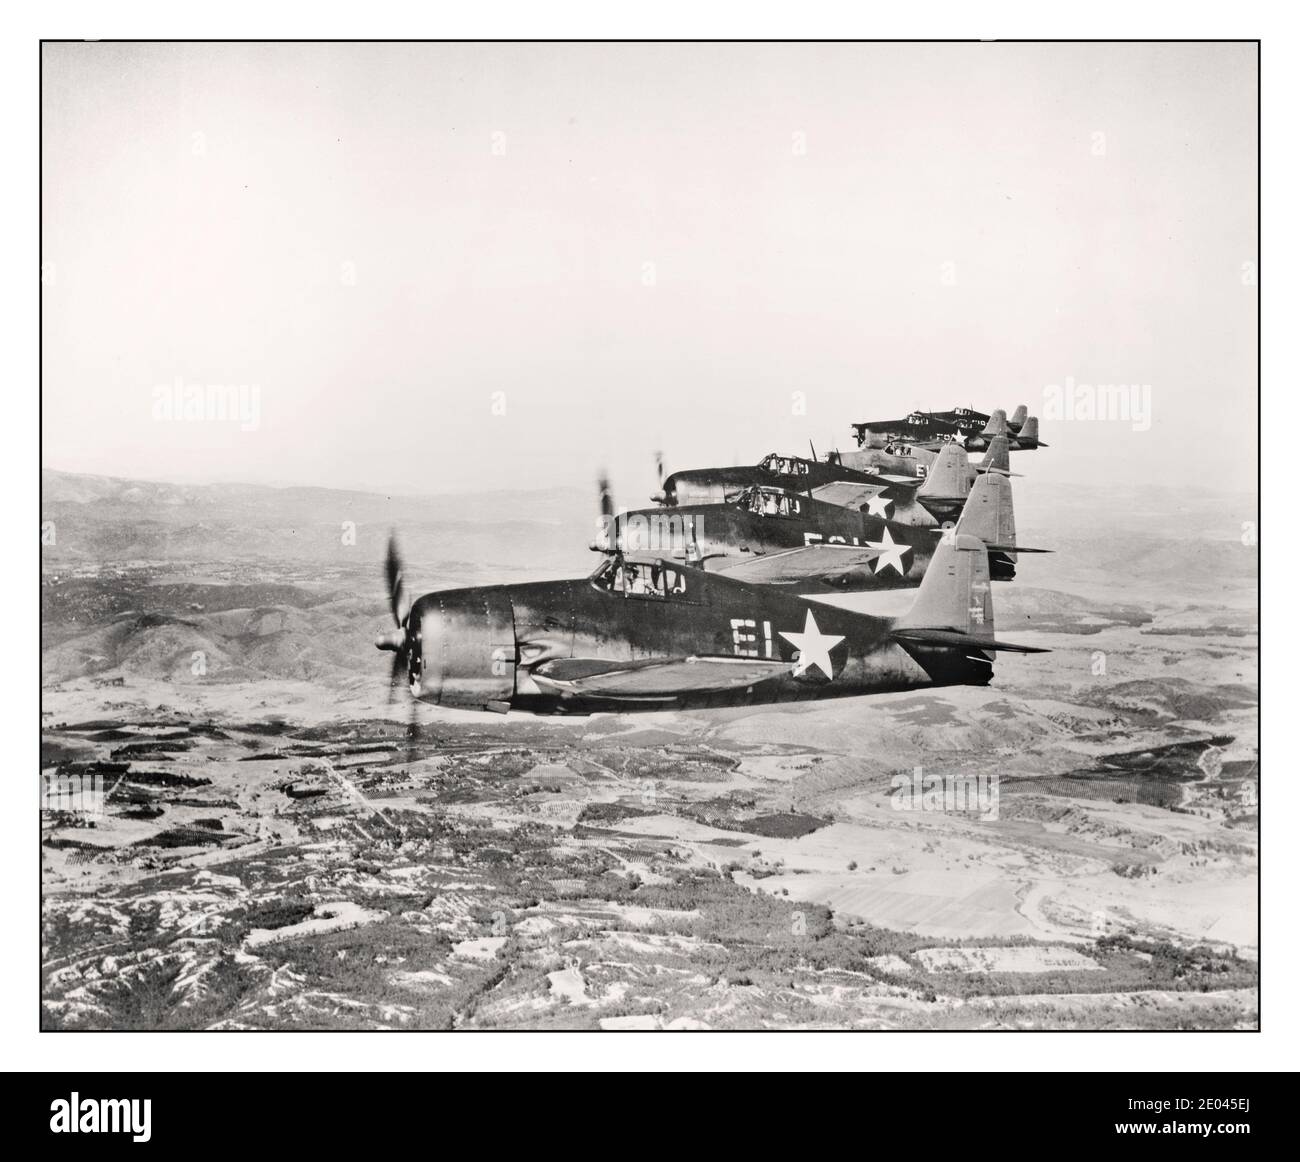 Archivo WW2 USAF Vista aérea de siete aviones Grumman Hellcat en vuelo creado / Publicado 1943. Aviones--Estados Unidos--1940-1950 - Guerra Mundial, 1939-1945--equipos y suministros--Fotografías aéreas americanas--1940-1950. Fotografía oficial de la Marina de los Estados Unidos Foto de stock